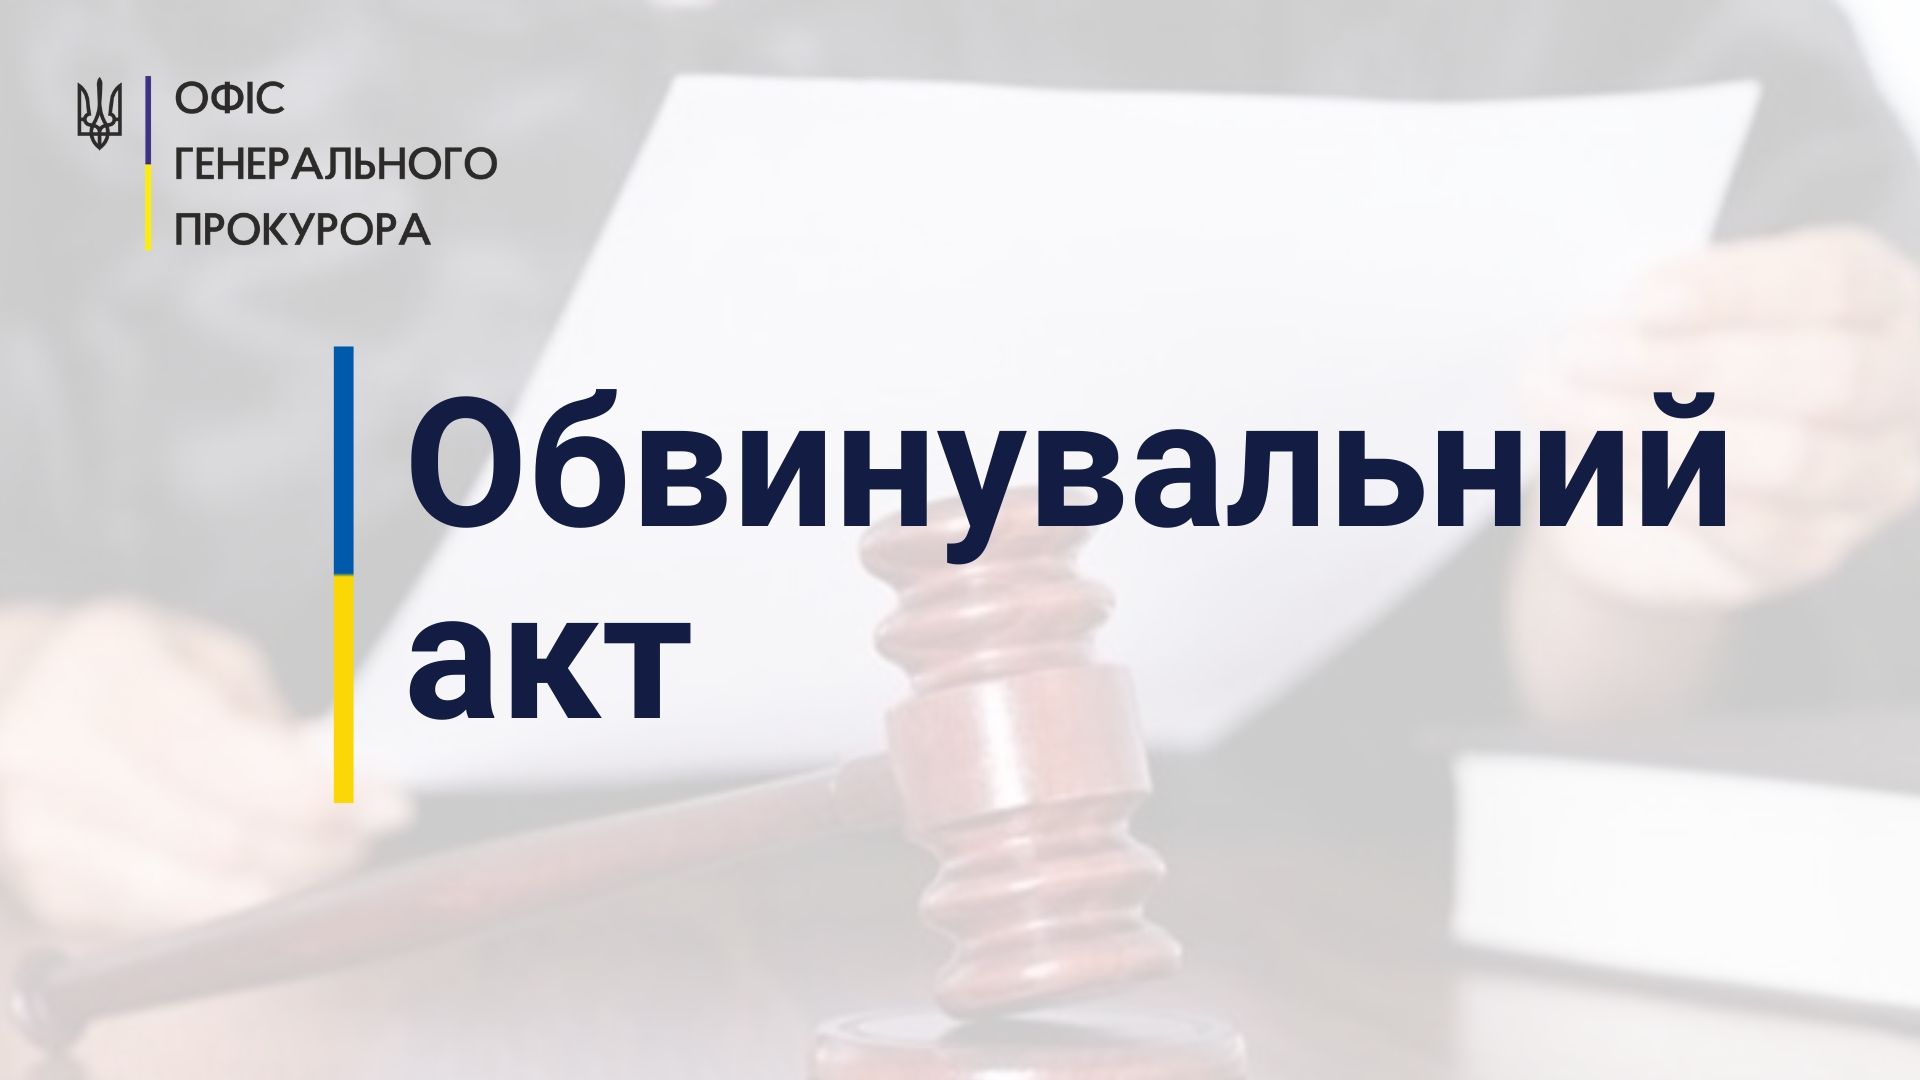 Участь в організації незаконного референдуму на Донеччині - судитимуть місцеву мешканку